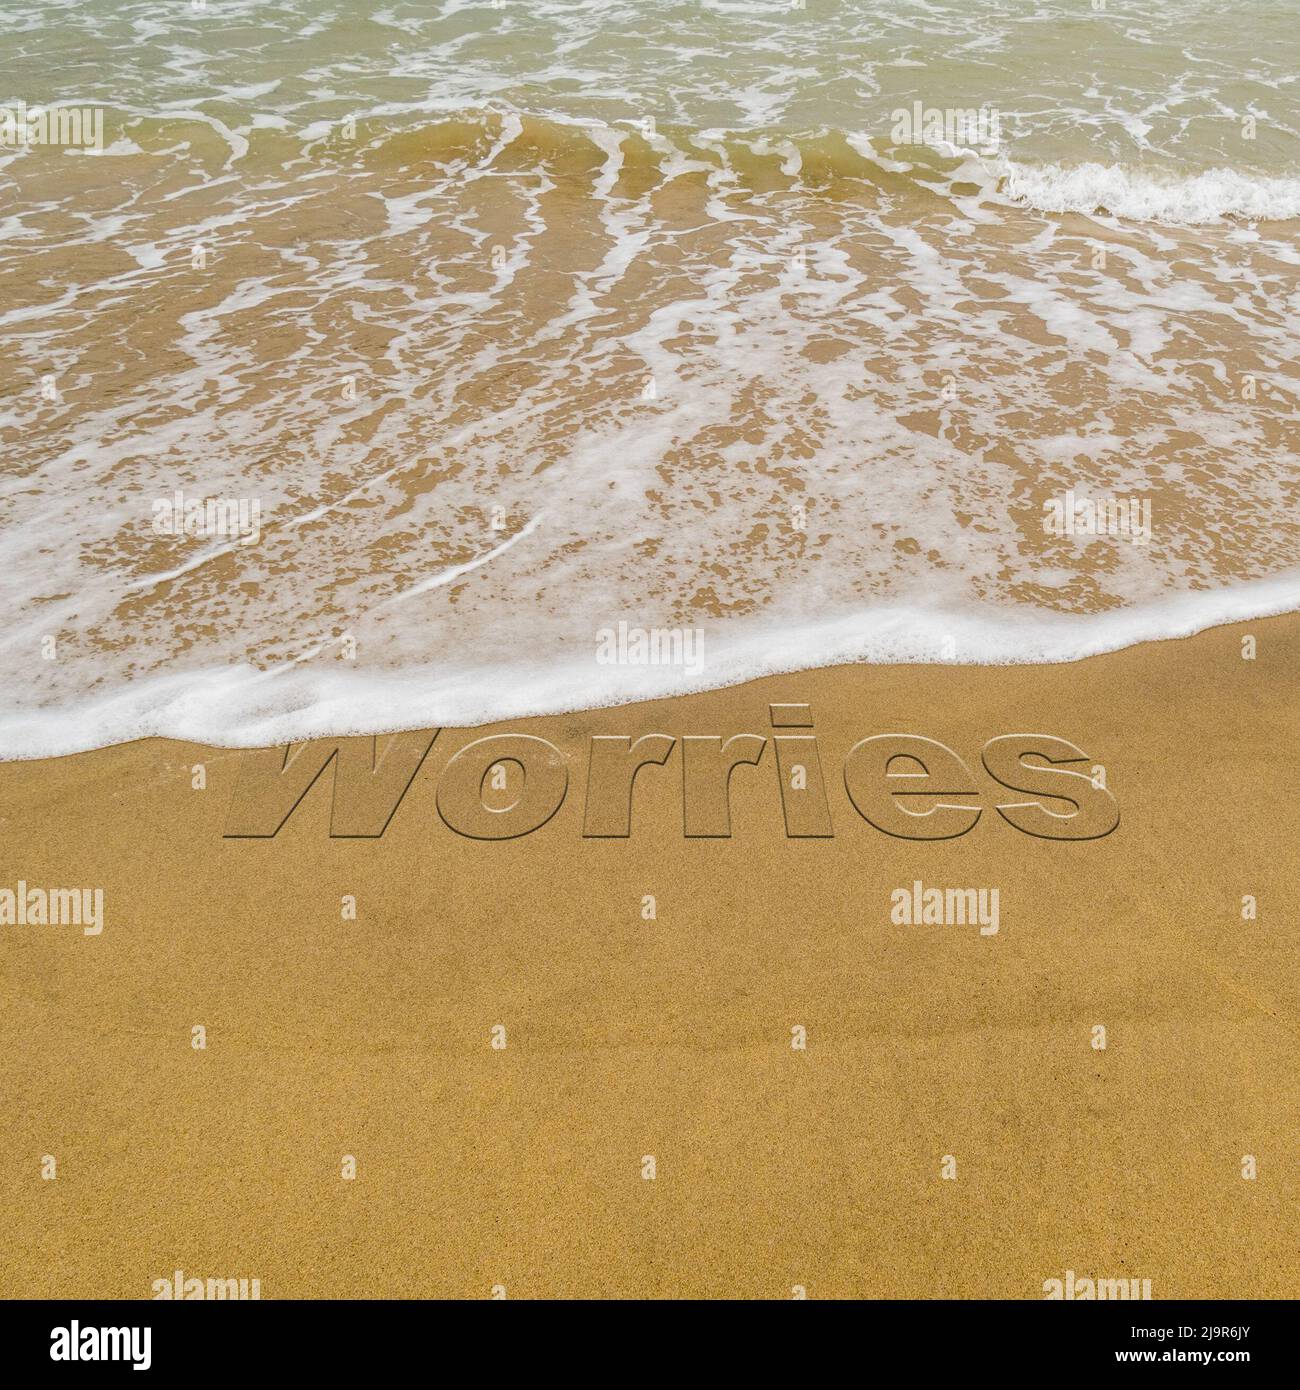 Imagen conceptual: Para ilustrar el lavado del estrés tomando unas vacaciones mientras las olas en una playa de arena lavan la palabra 'preocupaciones'. Foto de stock